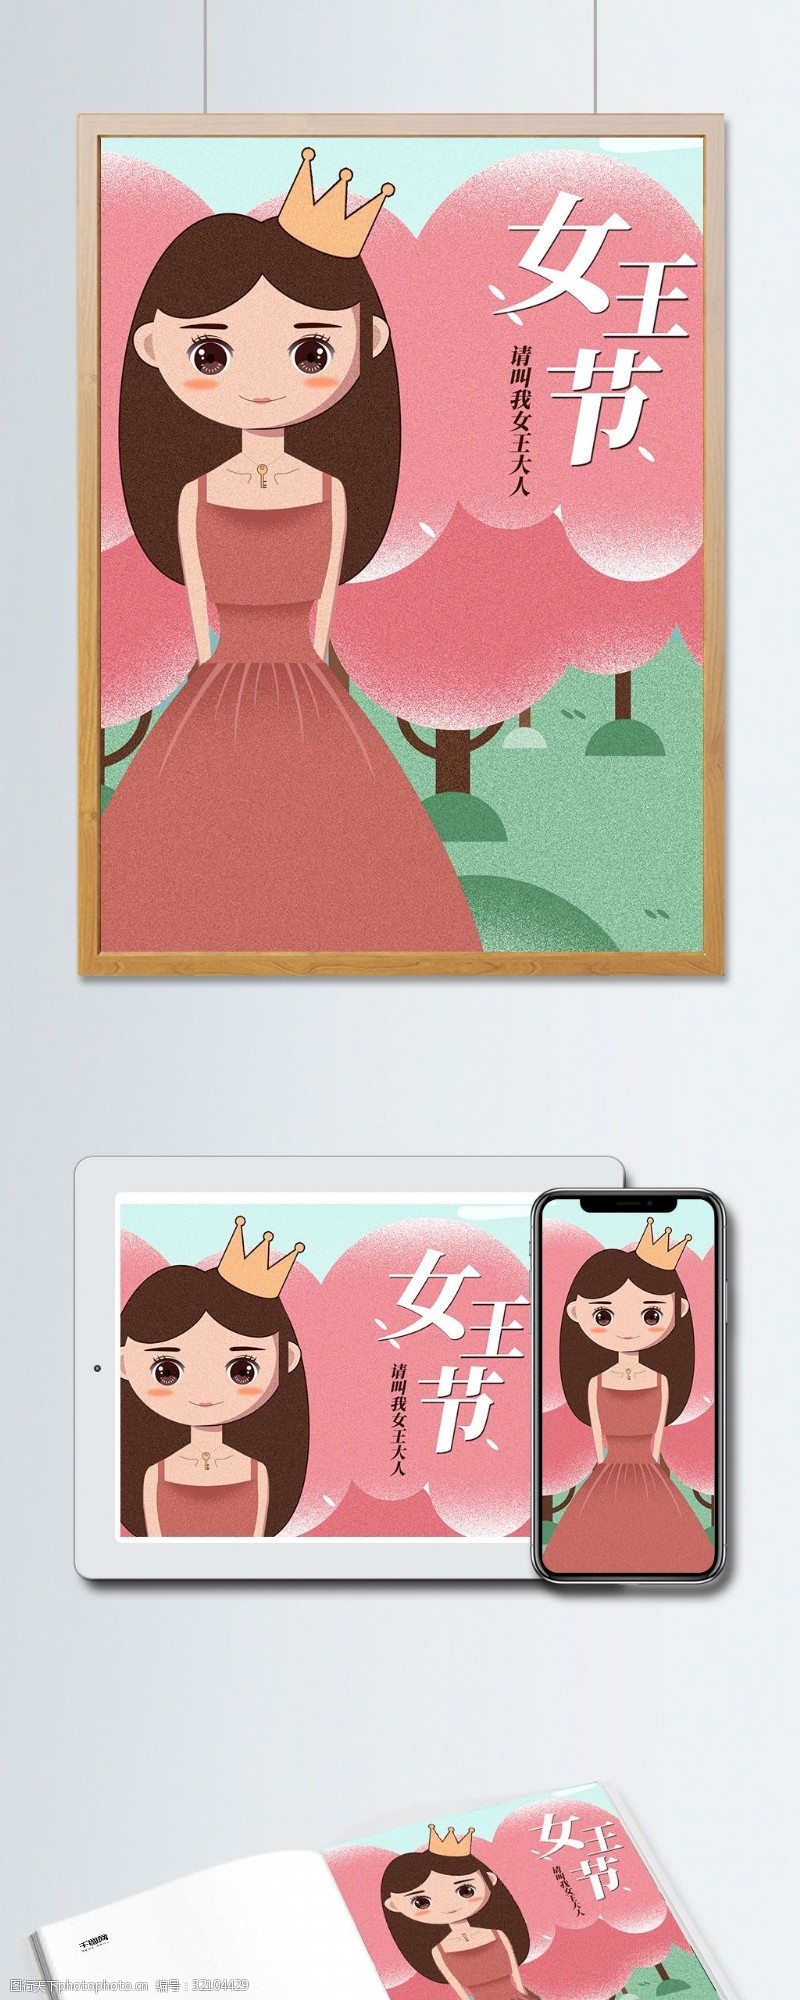 原创素材原创作品38妇女节女王节插画海报